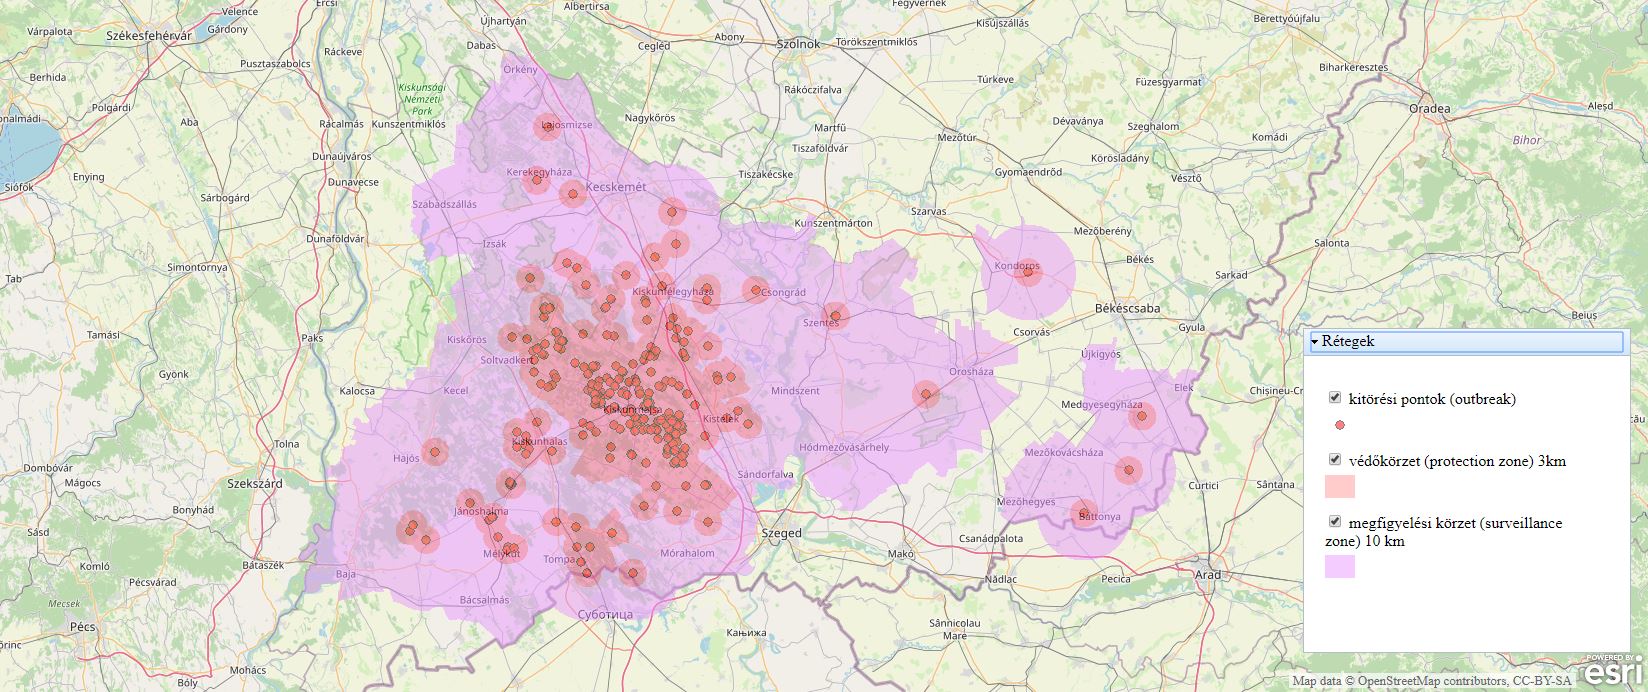 Verbreitungskarte der Geflügelpest-Ausbrüche in Ungarn